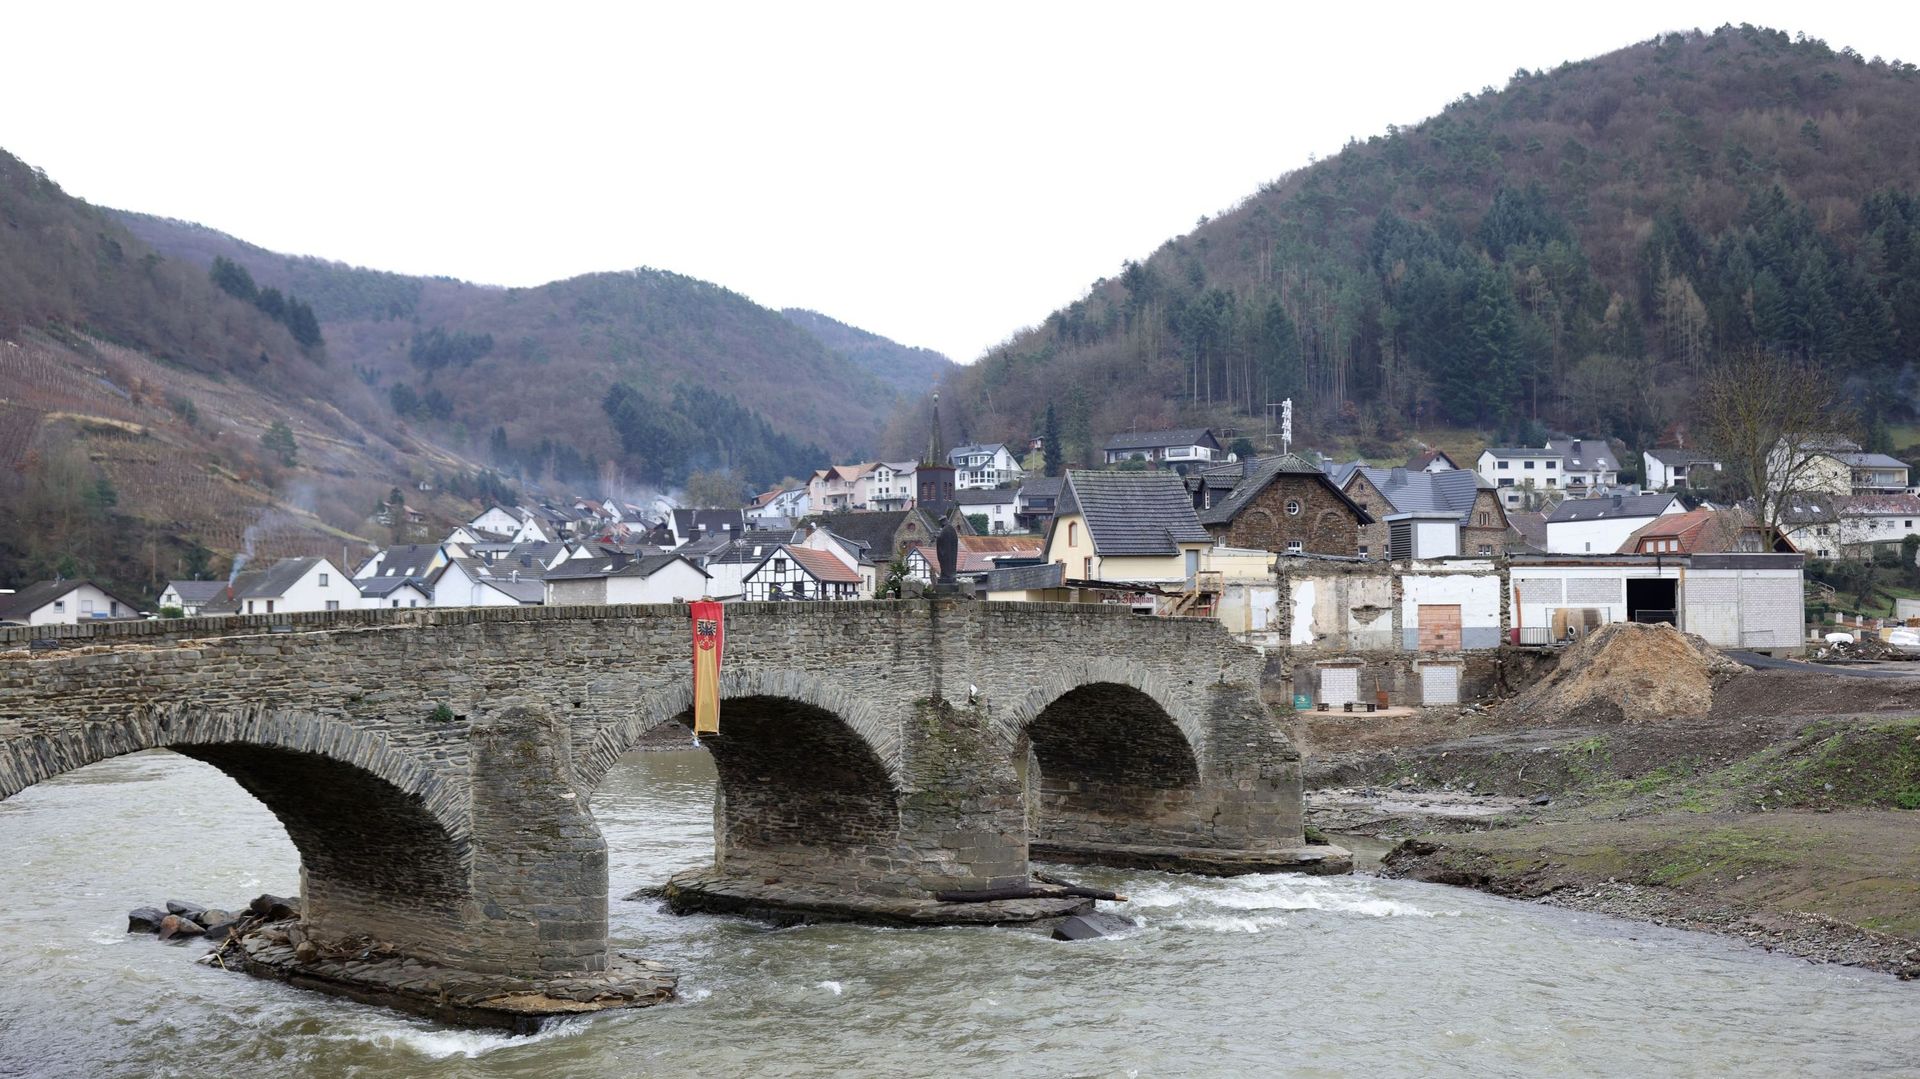 Image d'illustration - Le pont Nepomuk sur la rivière Ahr, partiellement détruit, est photographié pendant les efforts de rétablissement en cours après les inondations dévastatrices de l'année dernière, le 12 janvier 2022 à Rech, en Allemagne. 